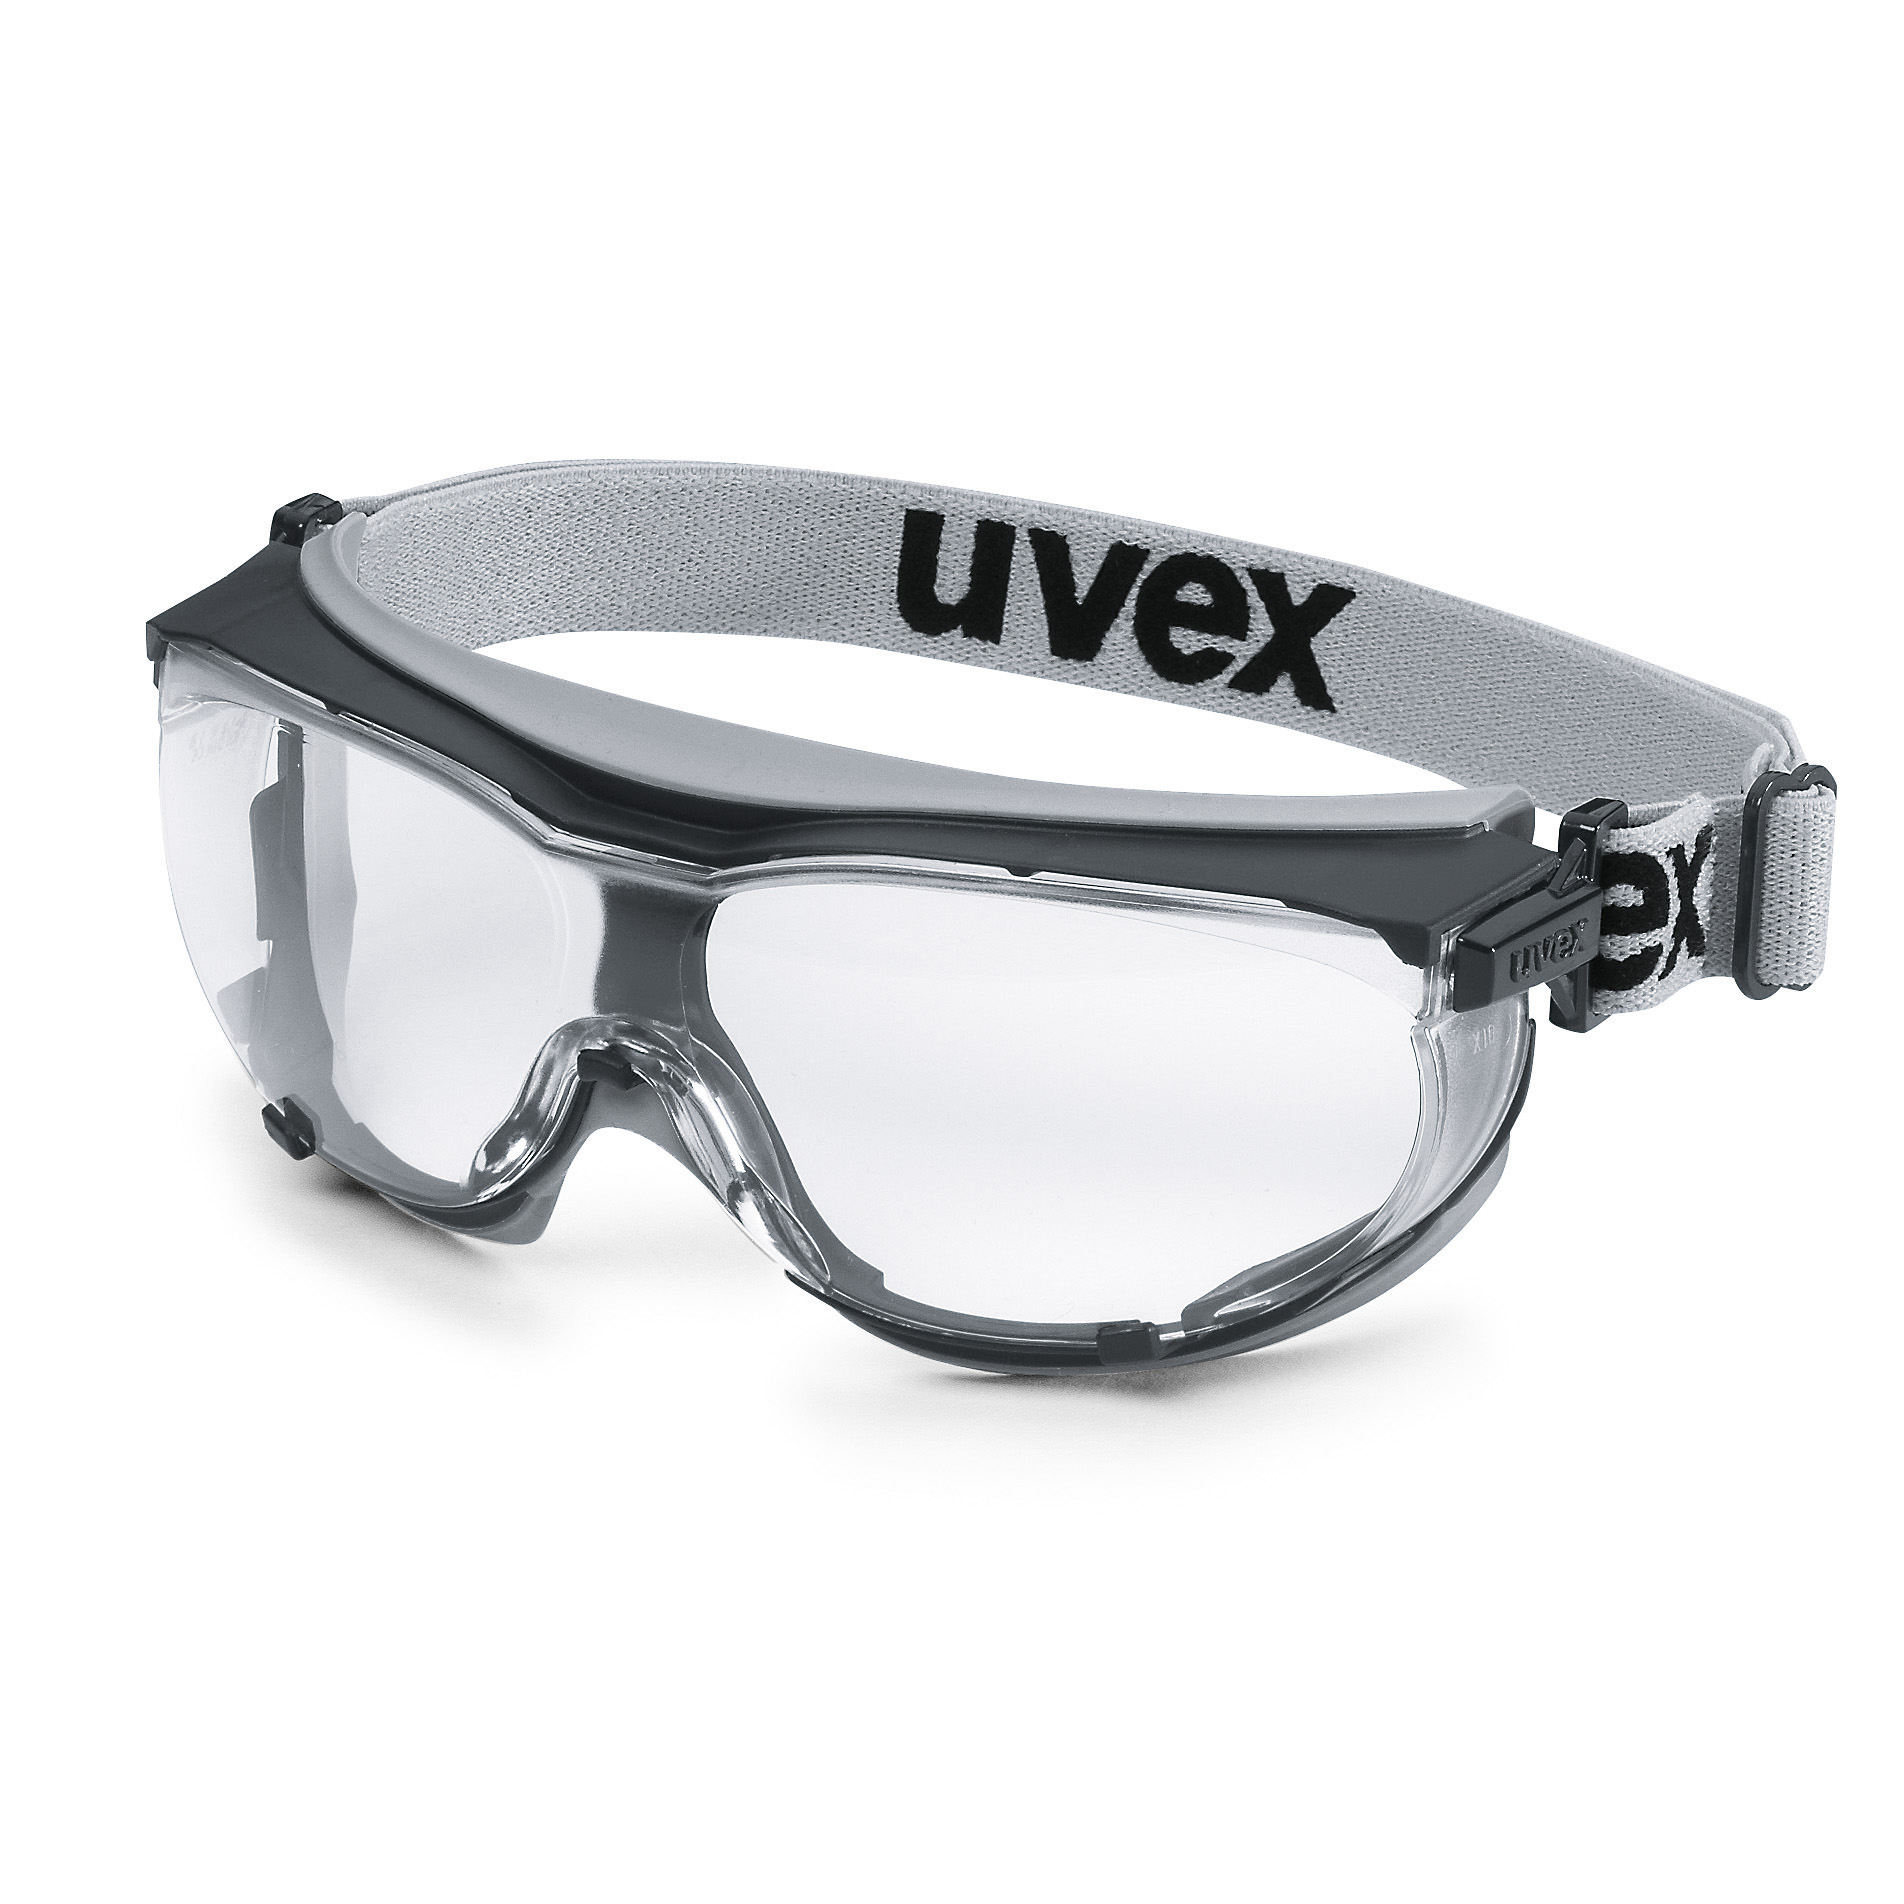 Vollsichtbrille uvex carbovision schwarz, grau